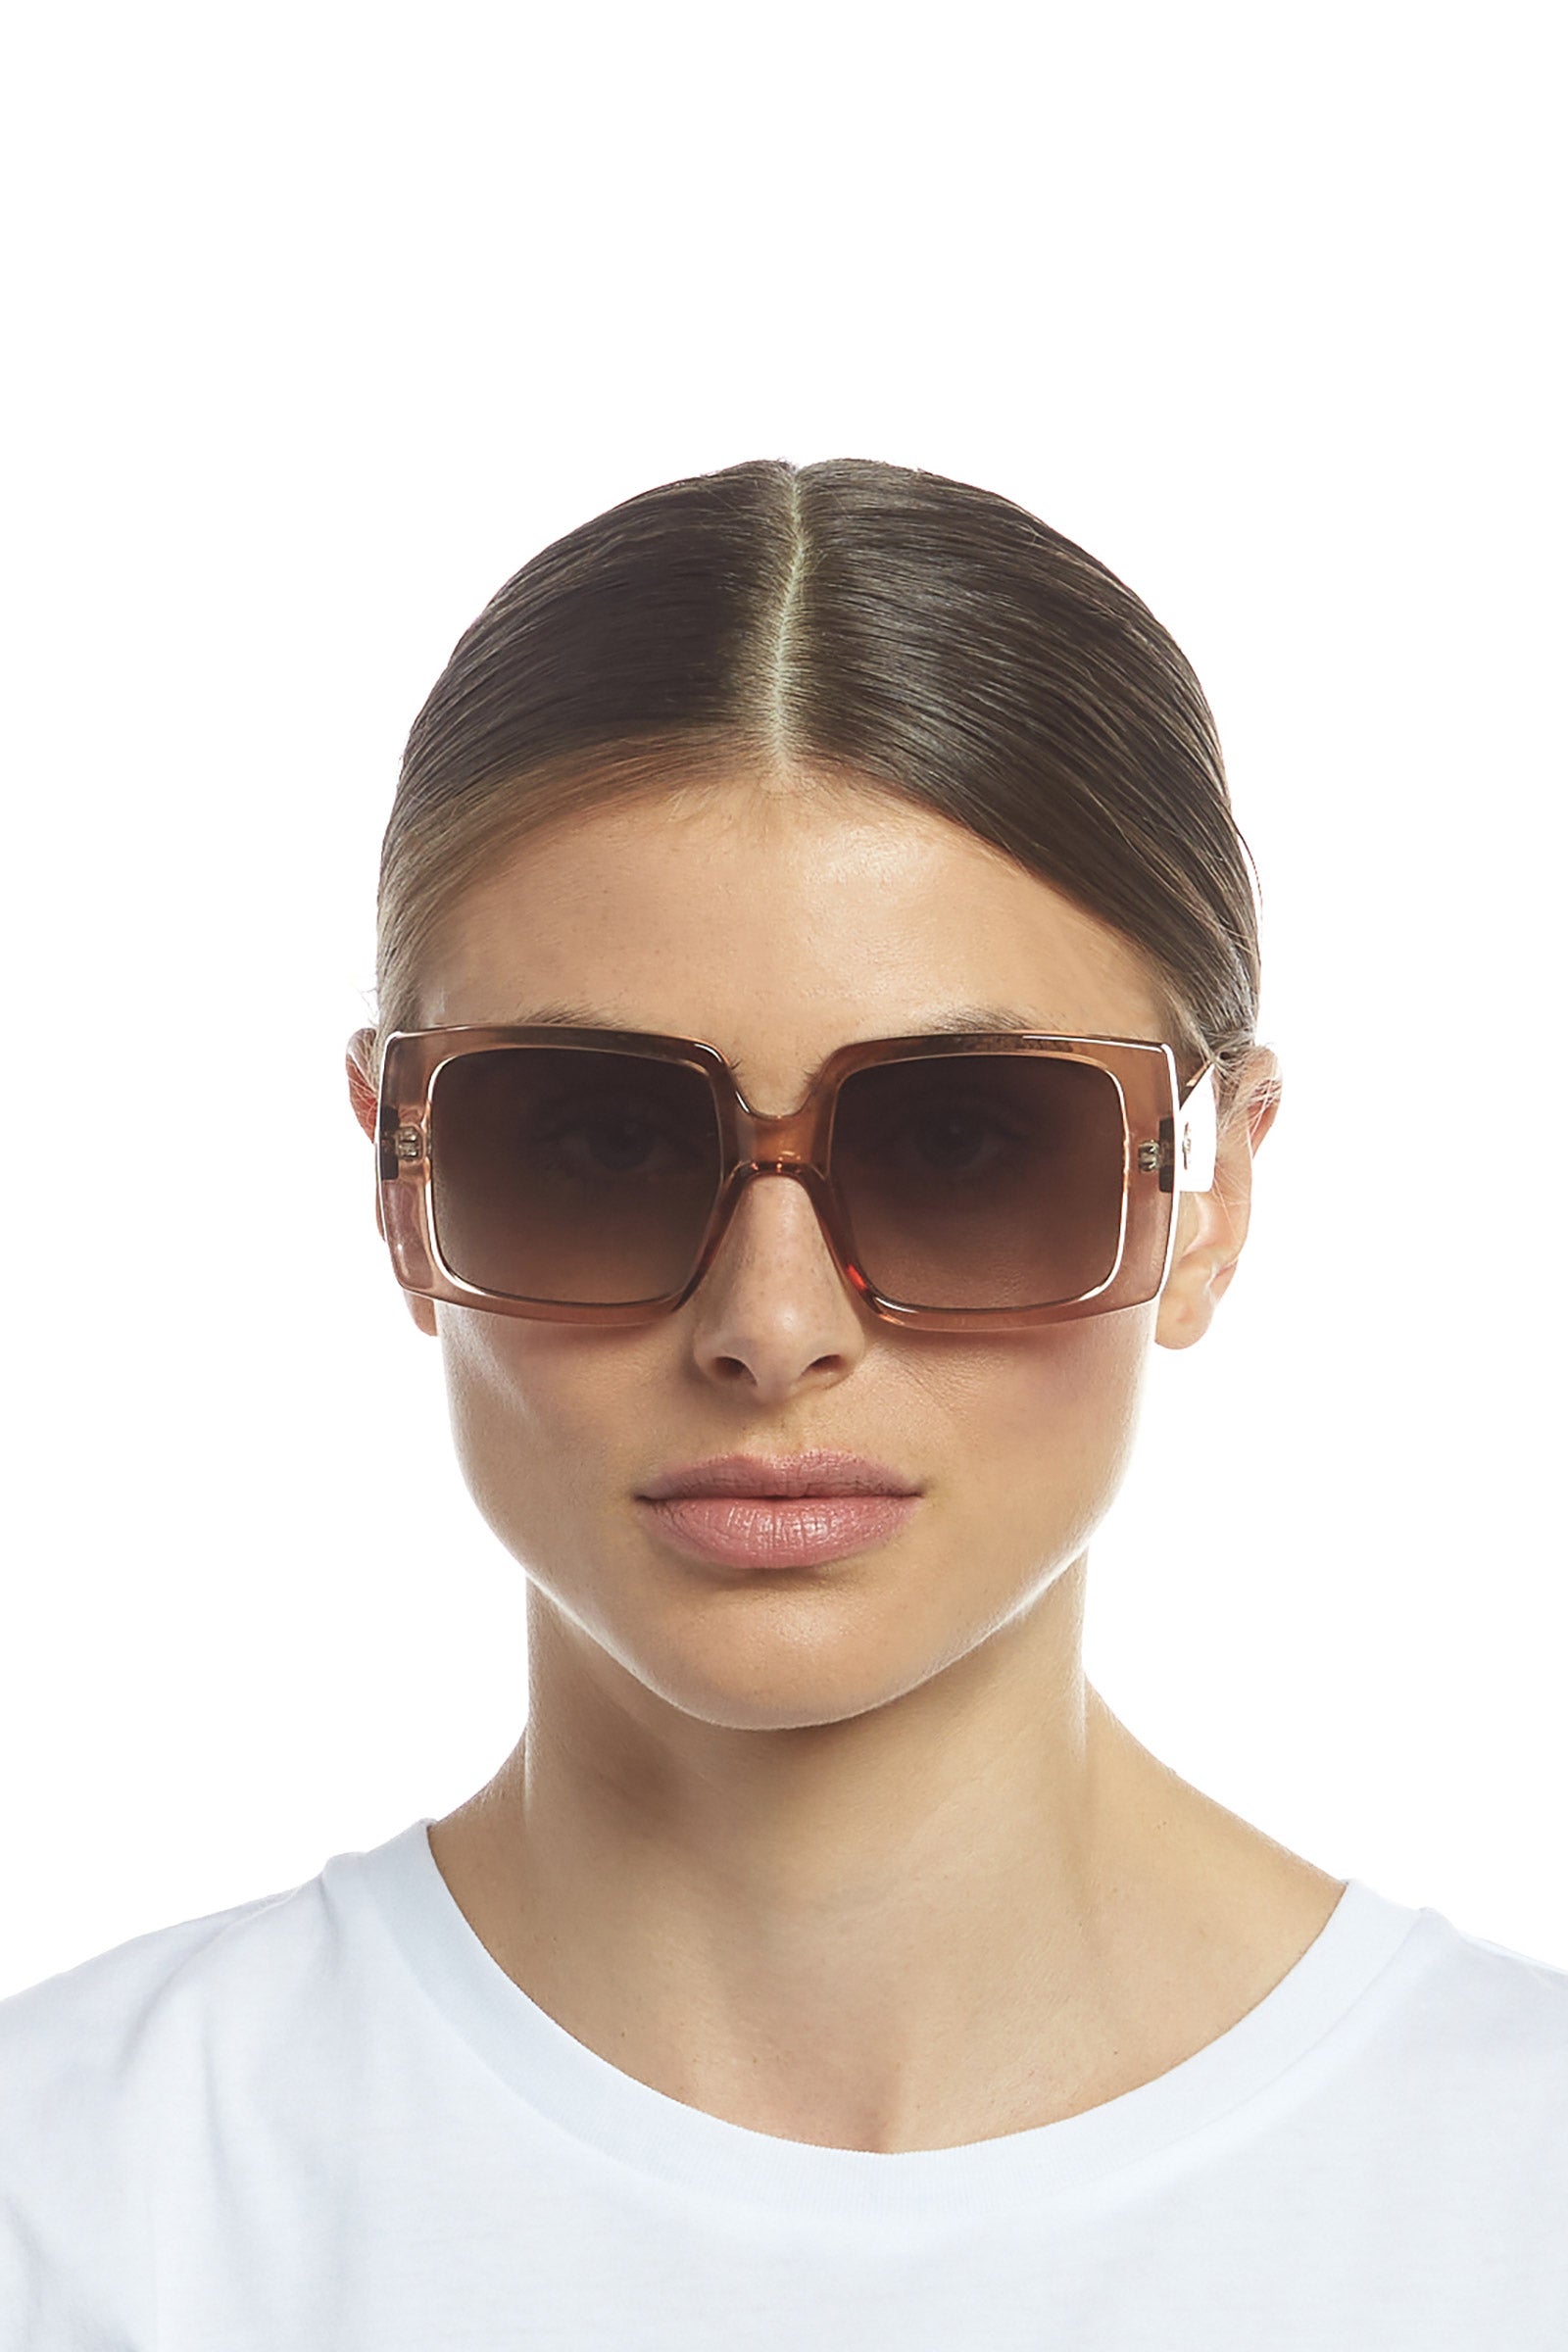 Glo Getter Sunglasses - Pebble